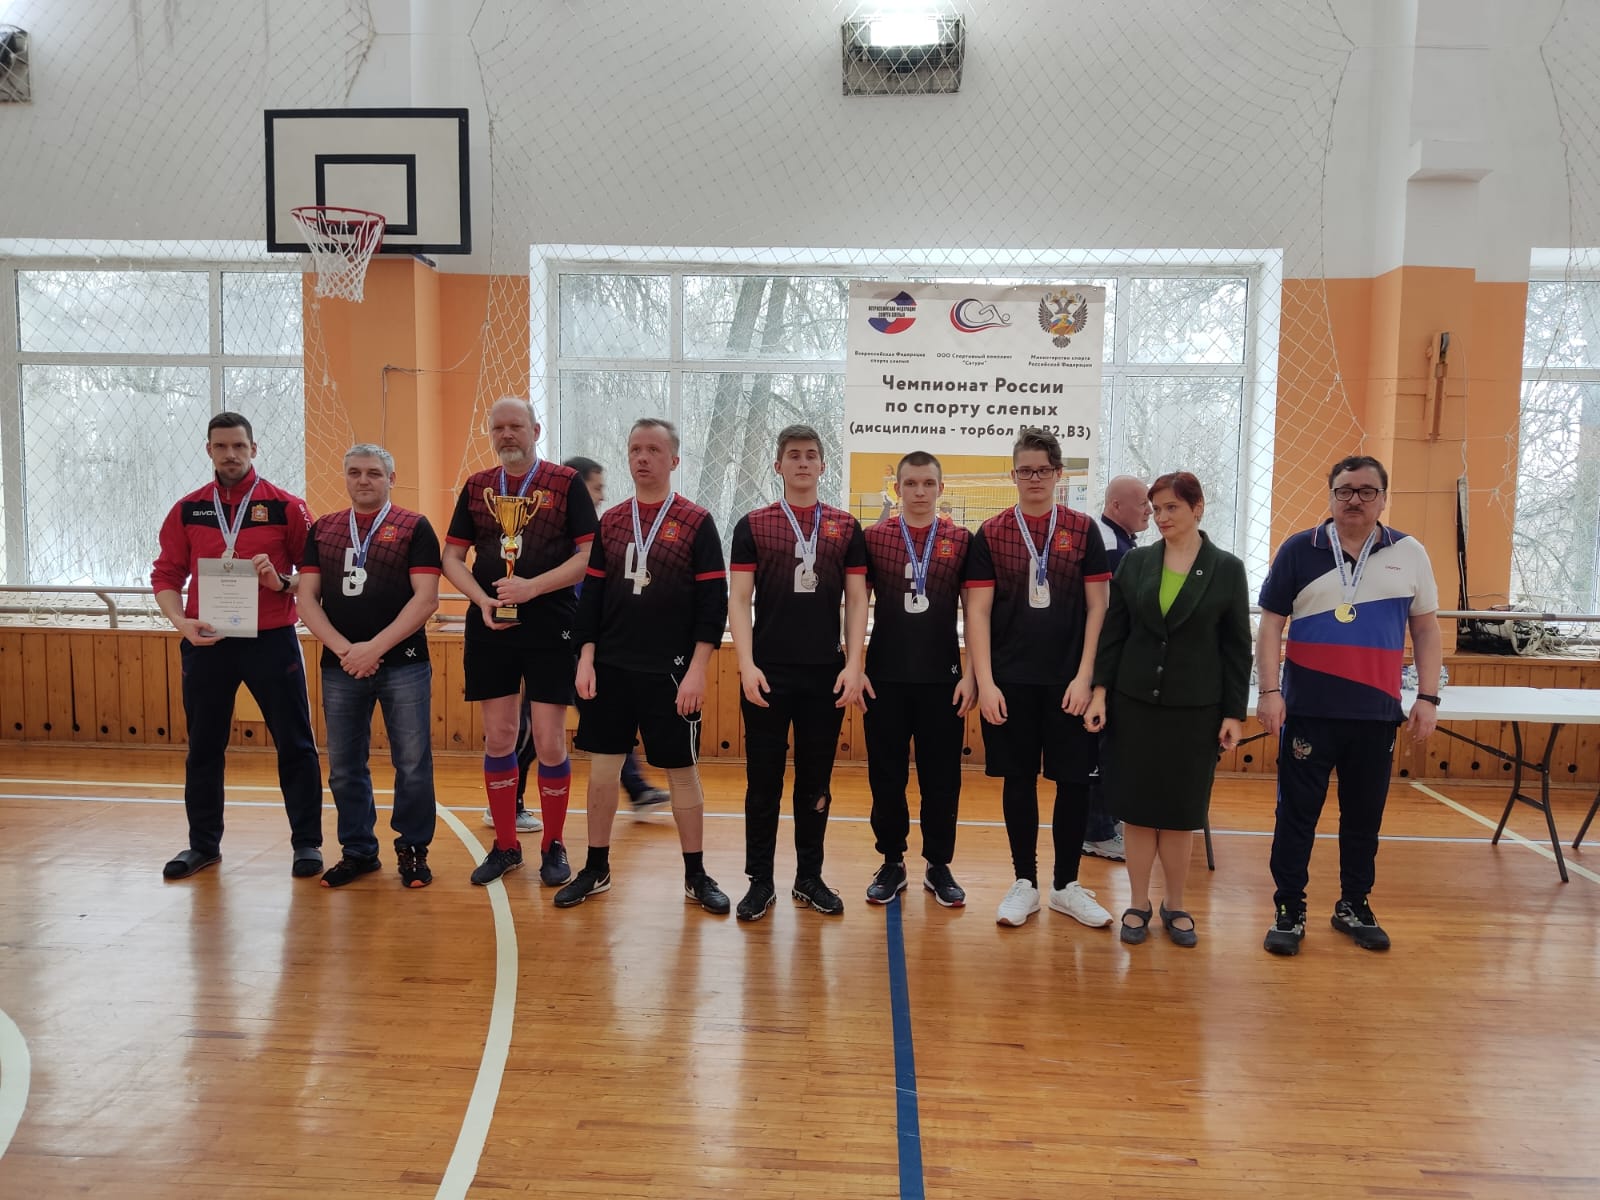 Мужская сборная Новосибирской области и женская сборная Калужской области завоевали титулы чемпионов России по торболу спорта слепых